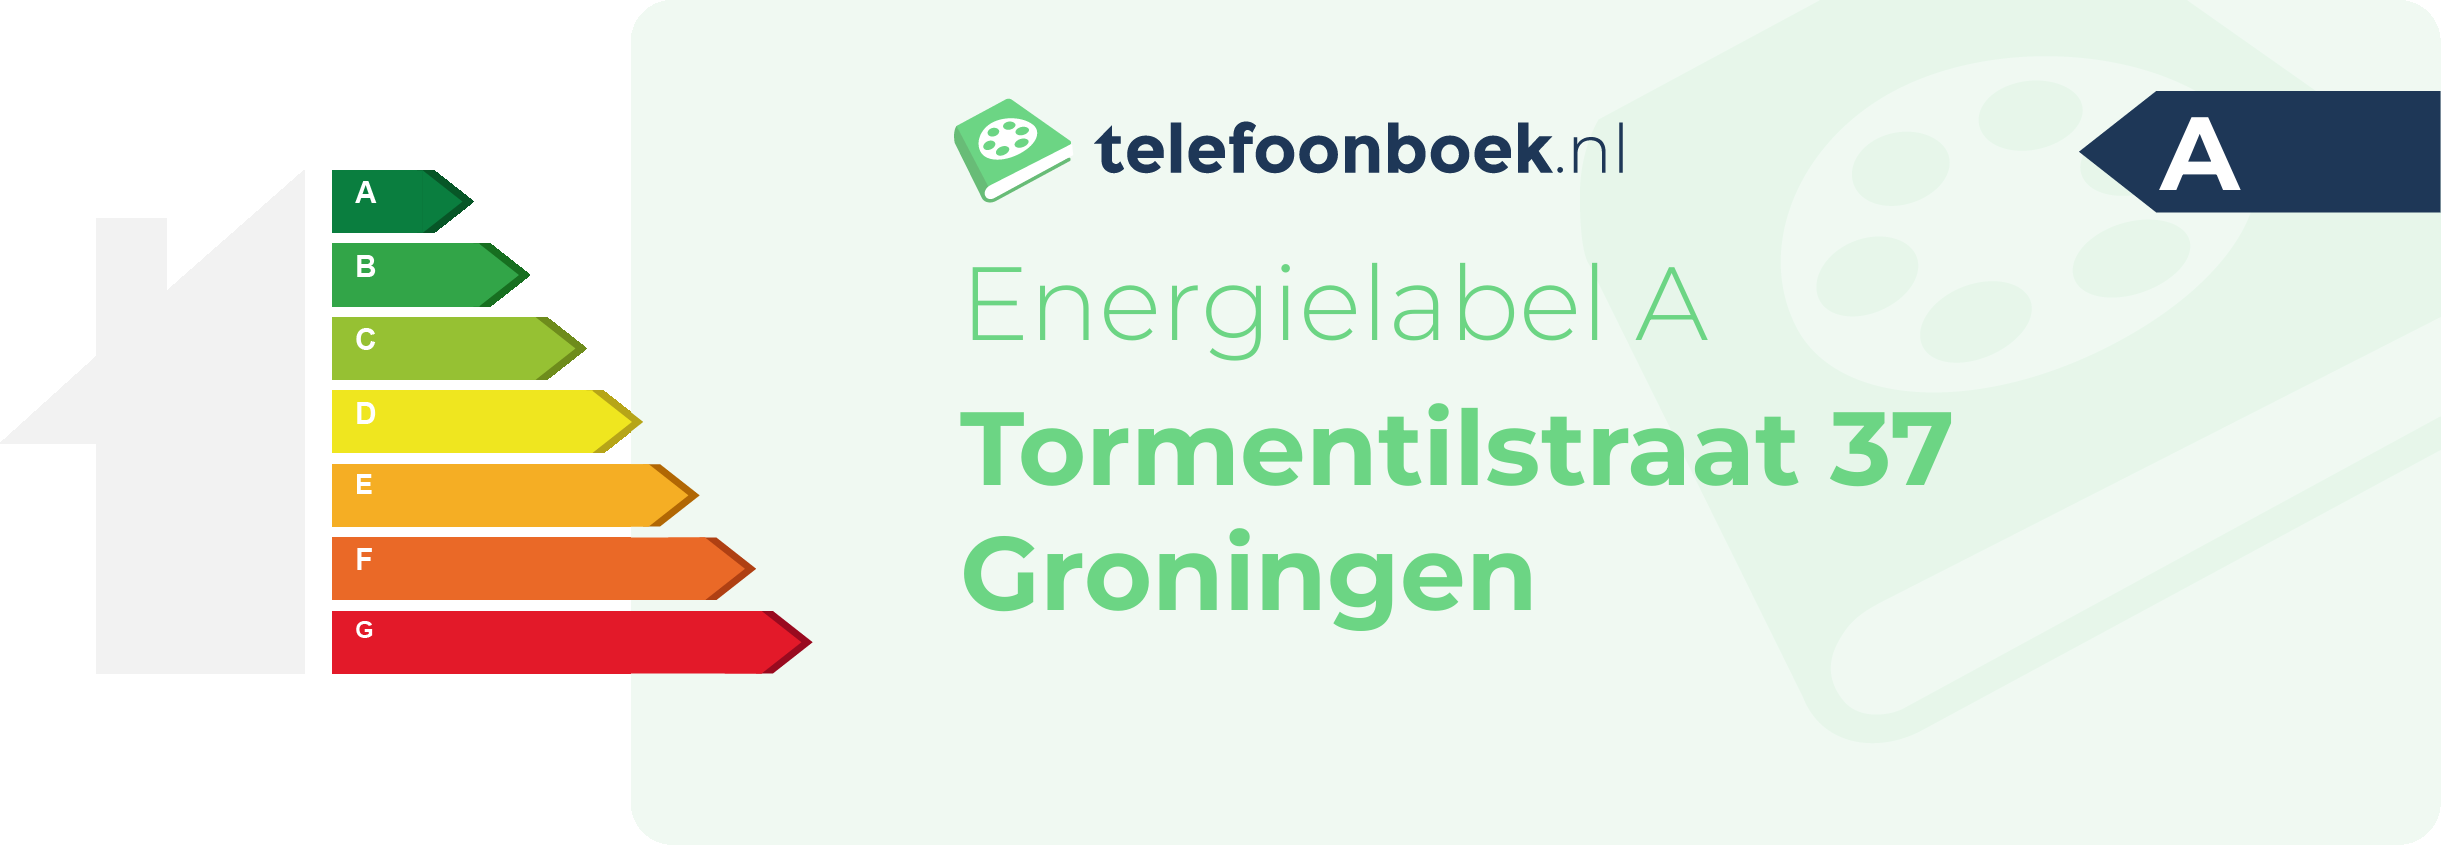 Energielabel Tormentilstraat 37 Groningen